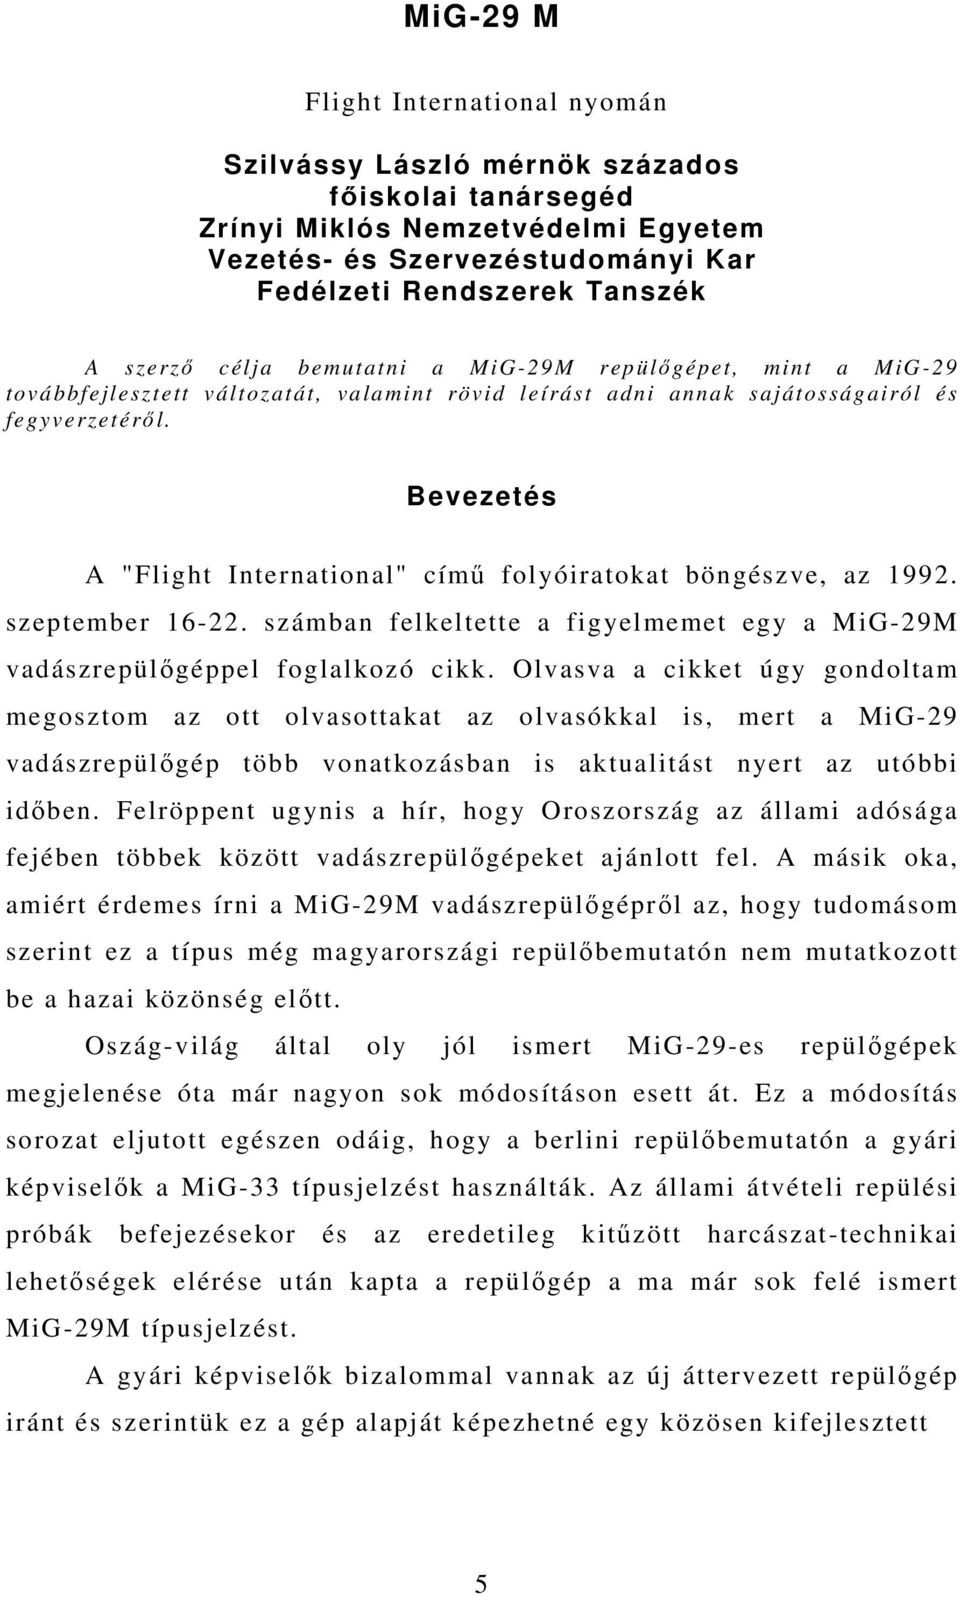 Bevezetés A "Flight International" című folyóiratokat böngészve, az 1992. szeptember 16-22. számban felkeltette a figyelmemet egy a MiG-29M vadászrepülőgéppel foglalkozó cikk.